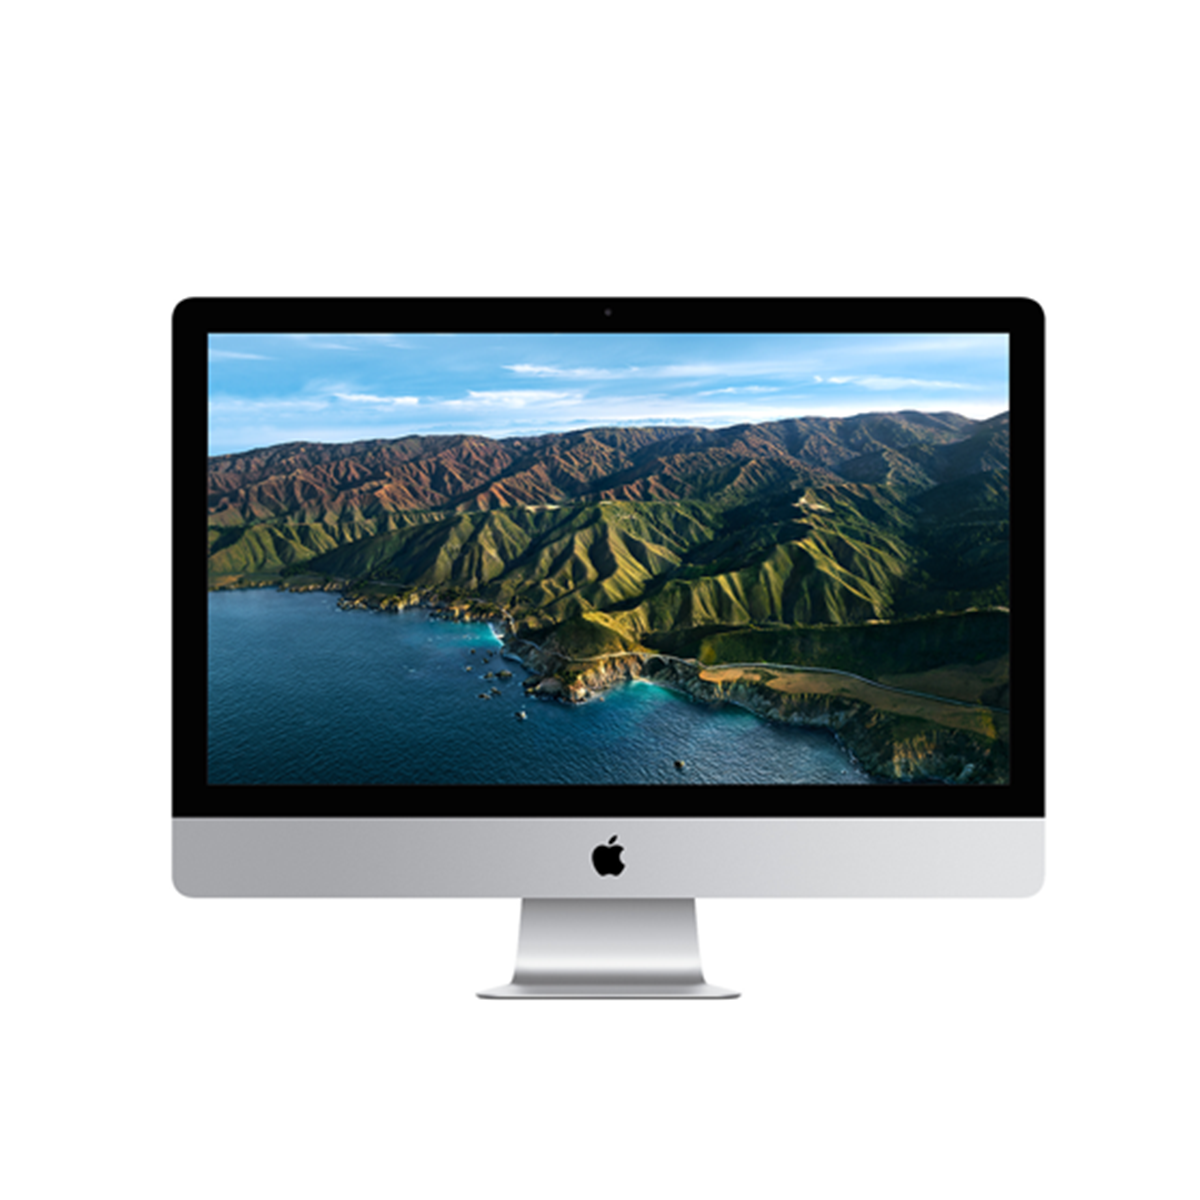  MXWU2 - iMac 5K 27-inch 2020 - 3.3GHz 6-Core i5/8GB/512GB SSD/Radeon Pro 5300 4GB 